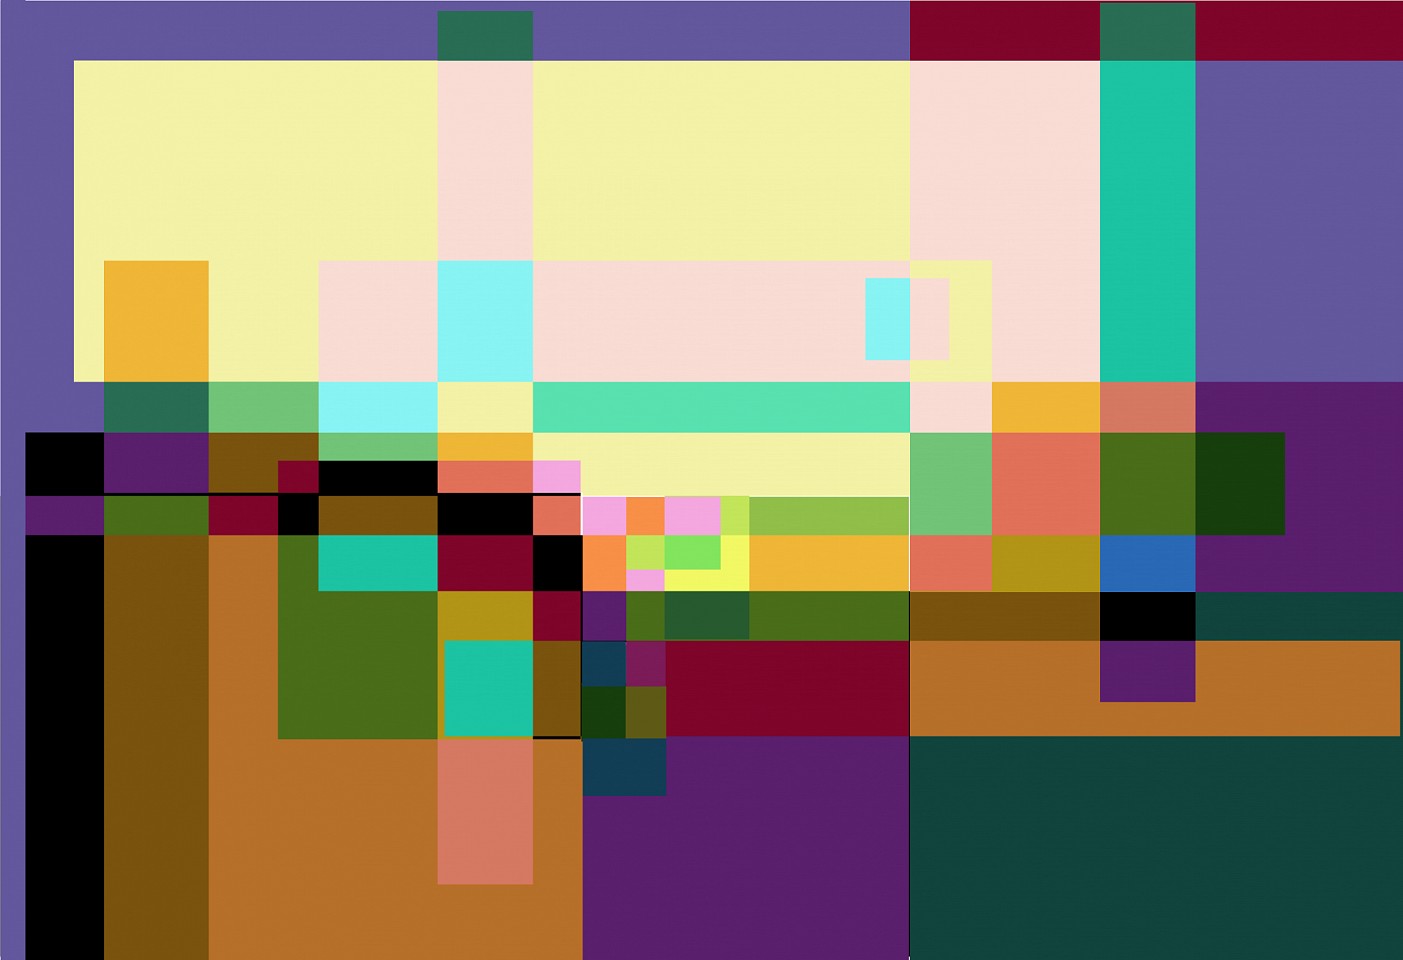 Dane Albert, Color Blocks #16, 2023
Acrylic on canvas (Concept), 48 x 60 in. (121.9 x 152.4 cm)
Series of colored blocks in multiple configurations
DA.cb-2023-016